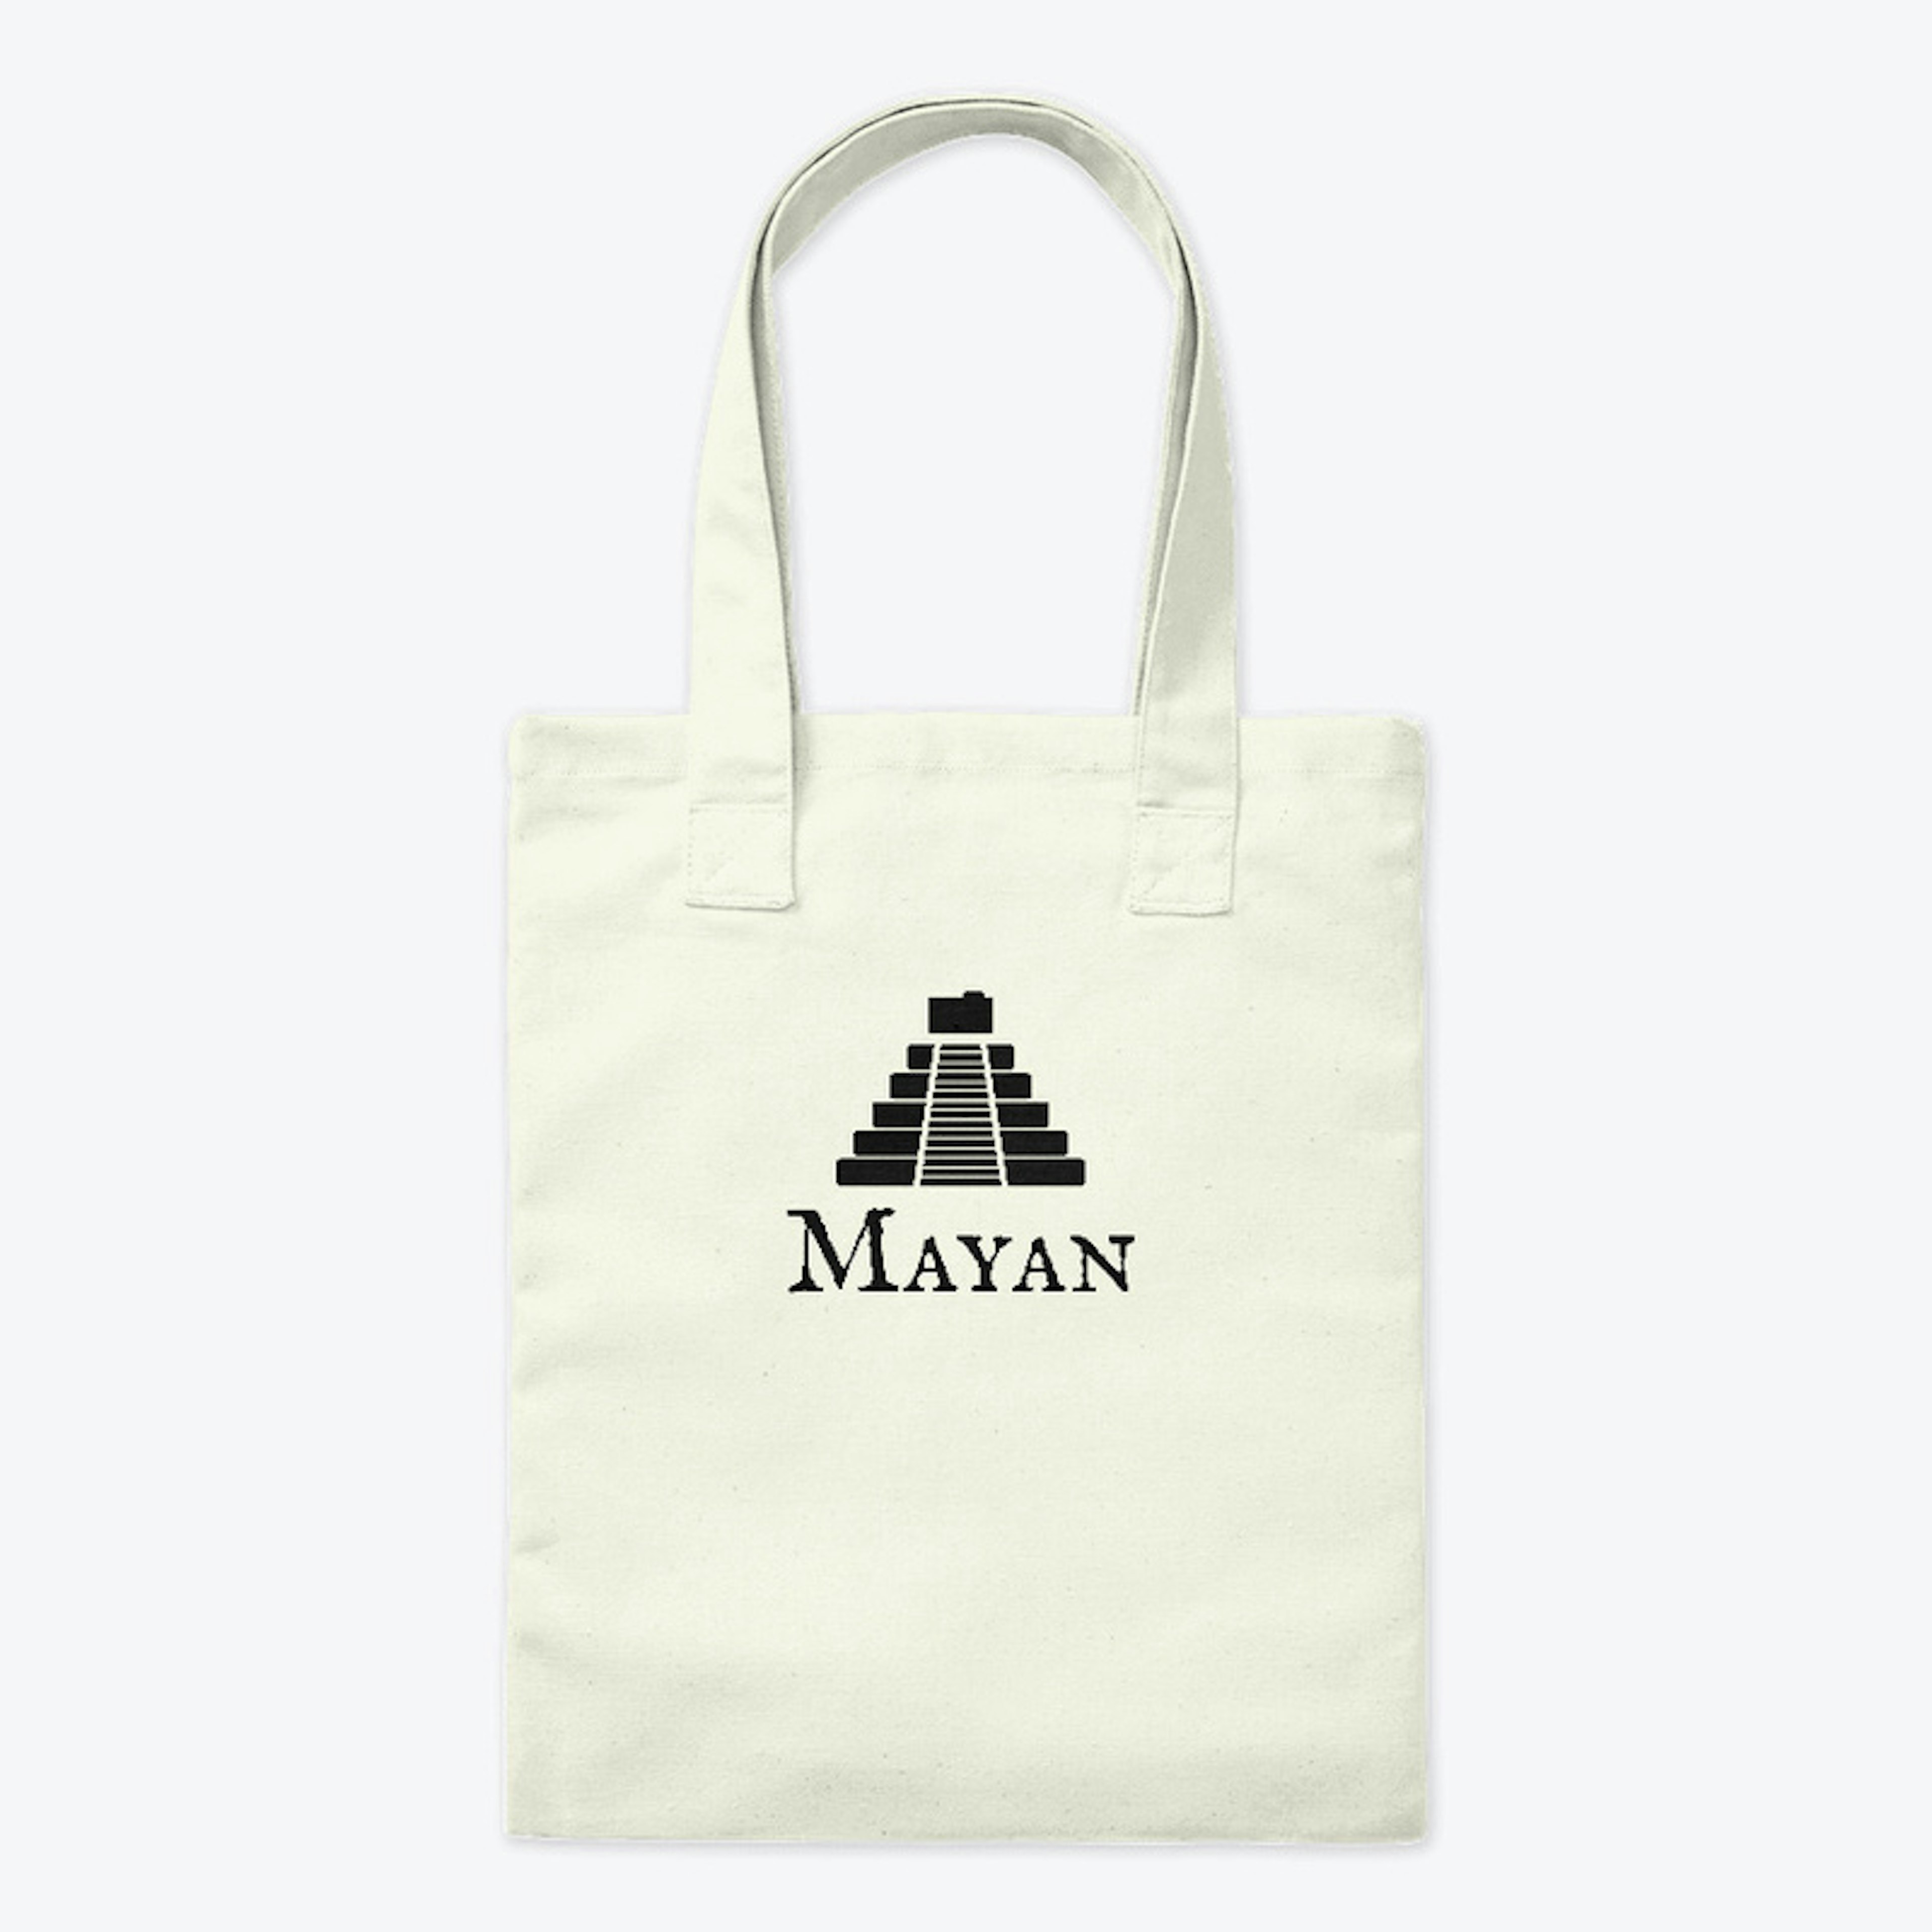 Mayan EDMS black logo